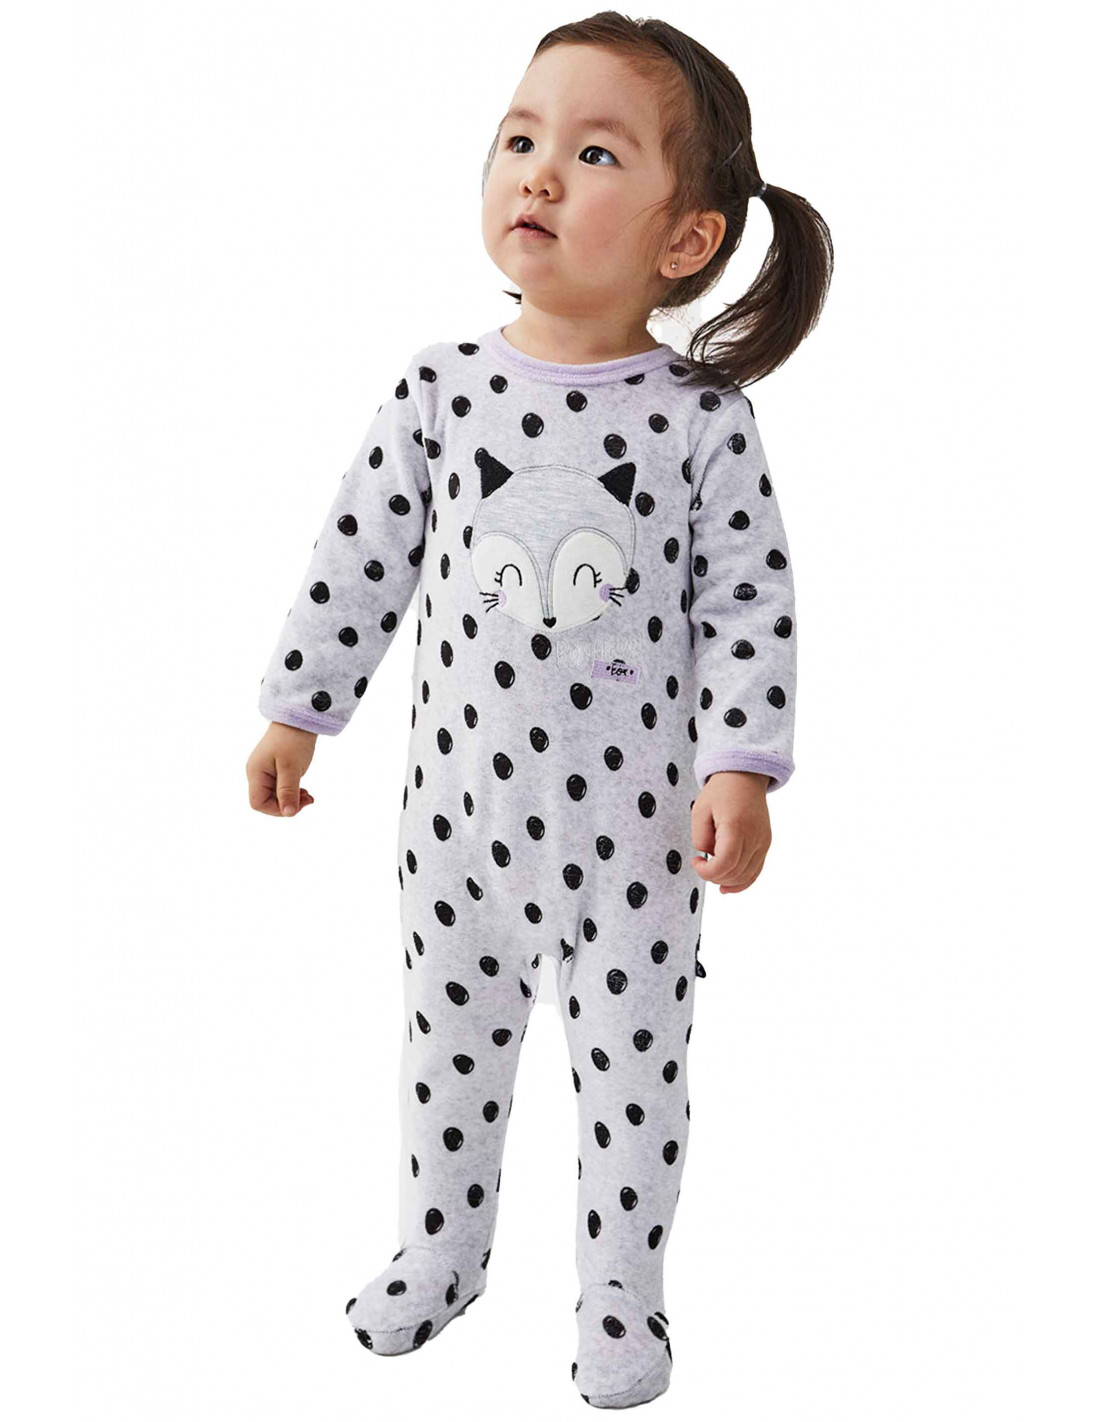 Pijama de bebé modelo “22200442” la marca YATSI